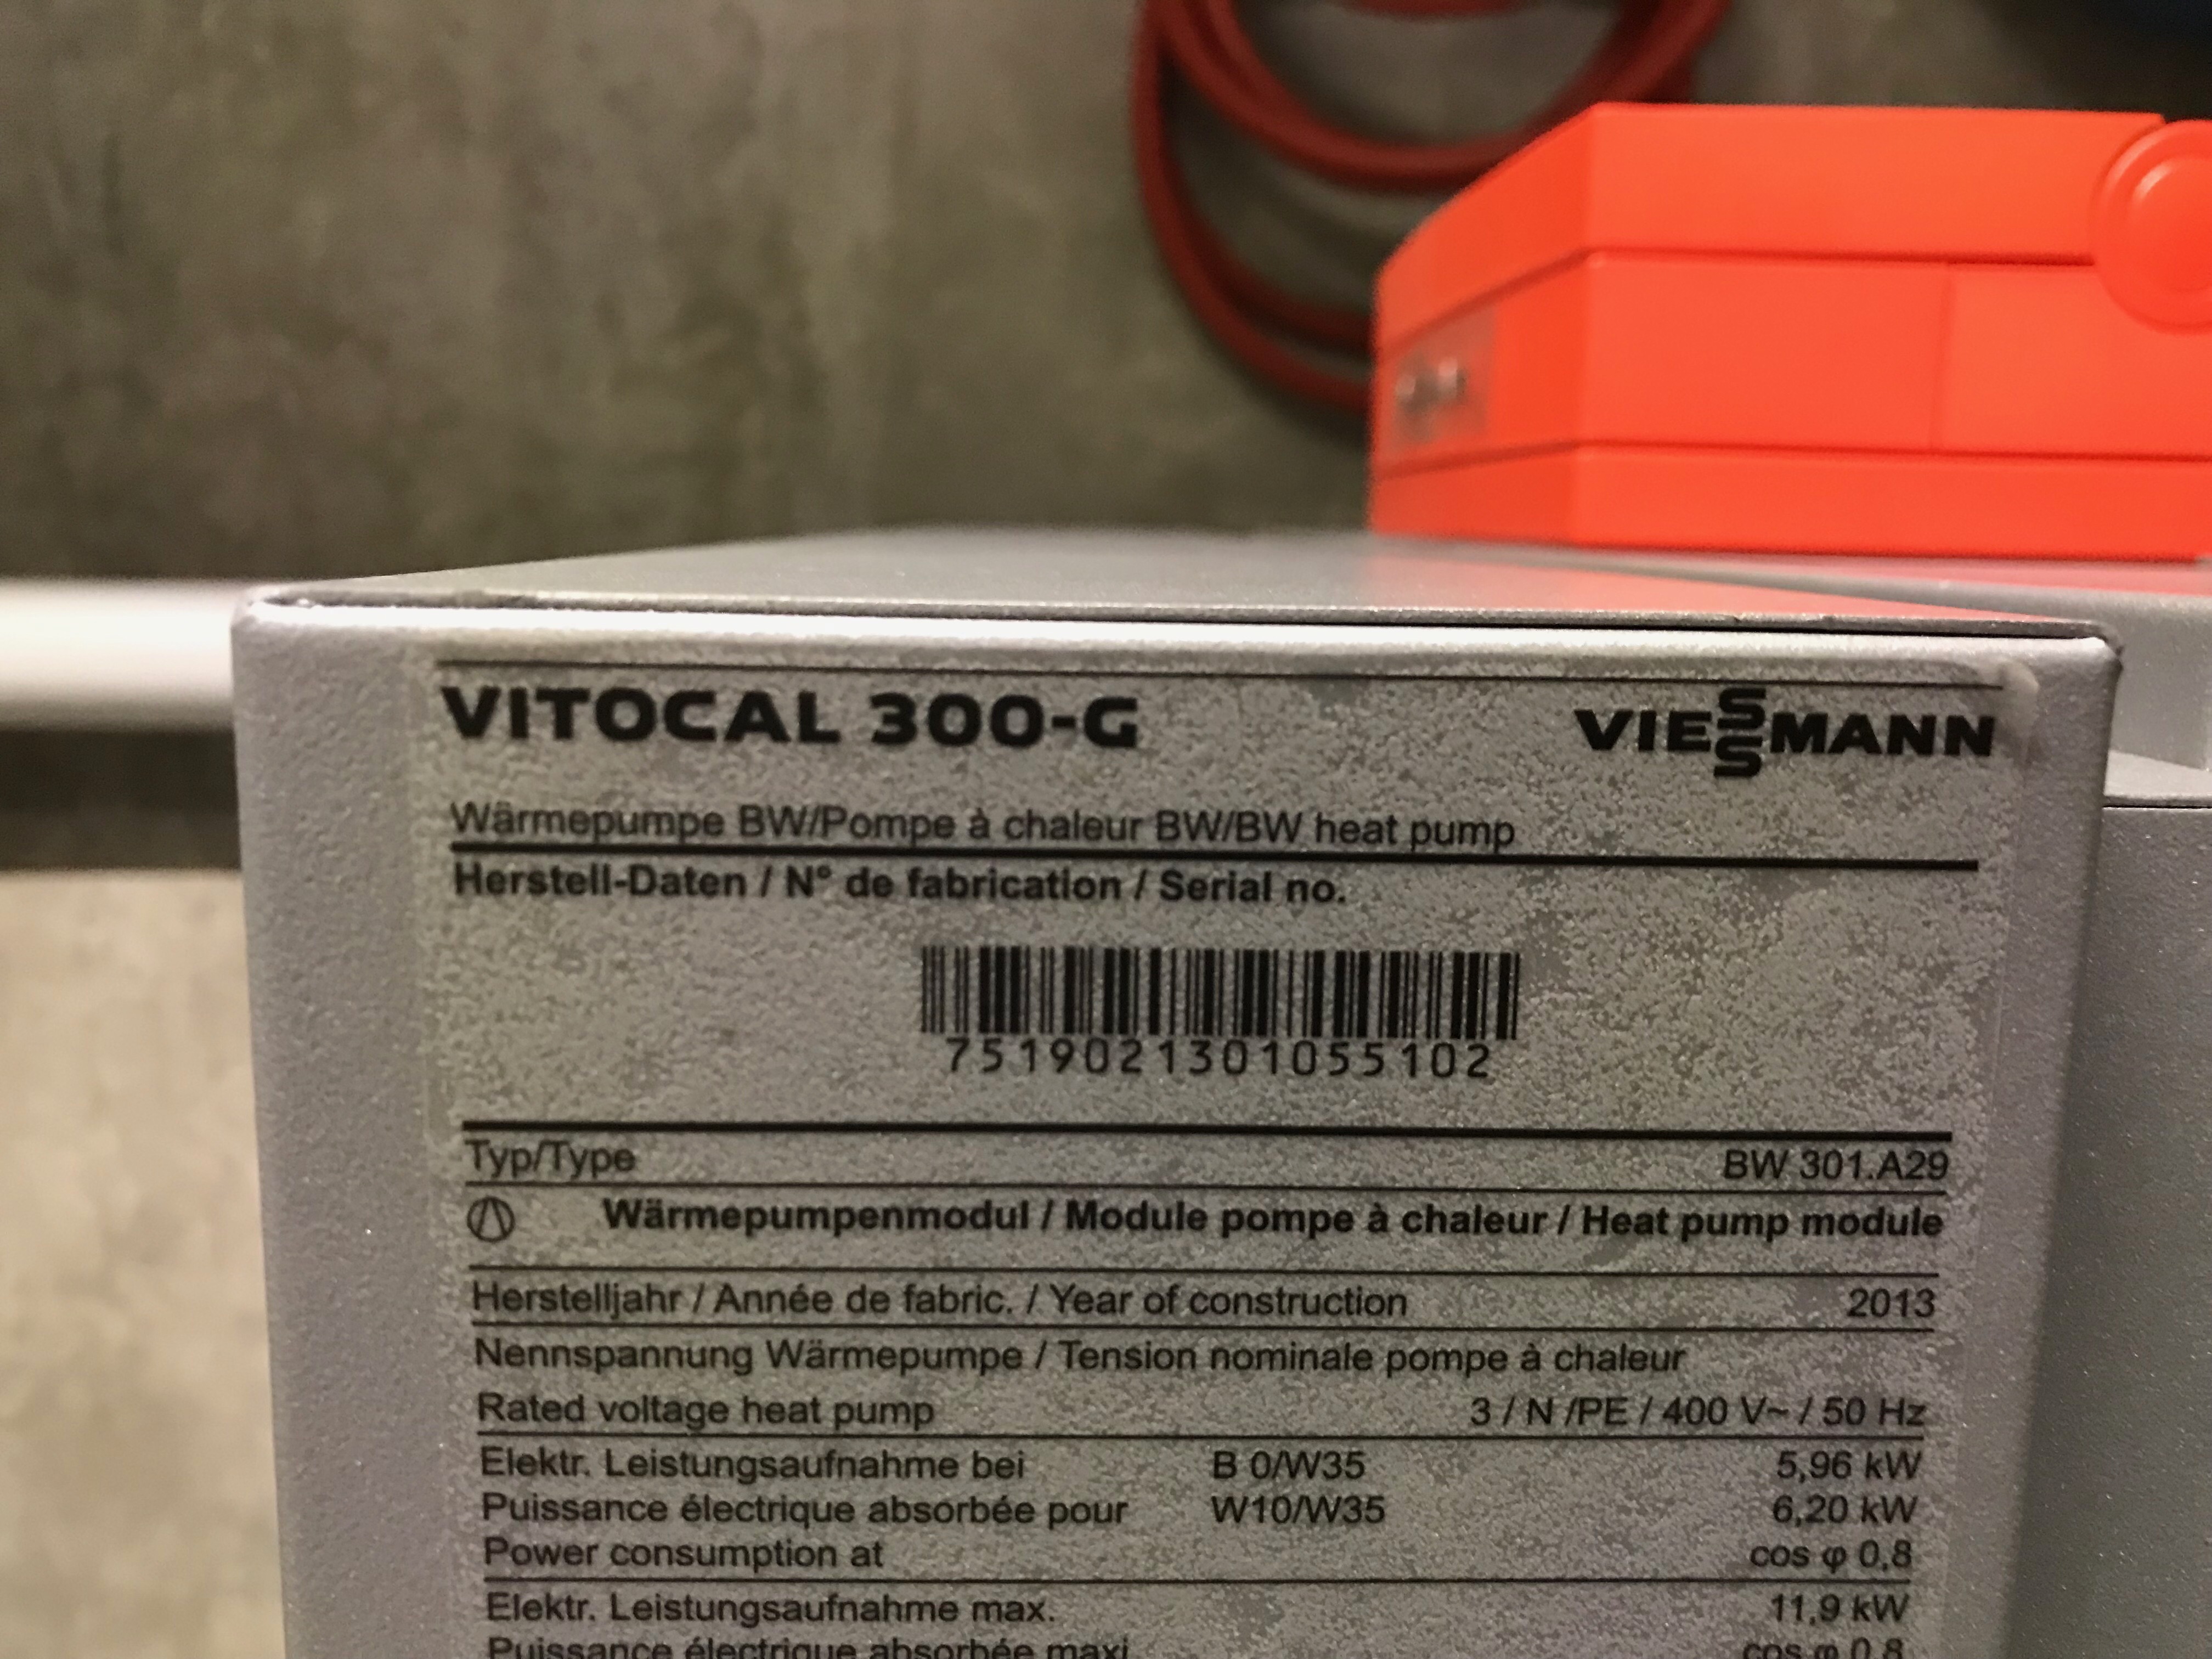 Viessmann Victocal 300-G.JPG